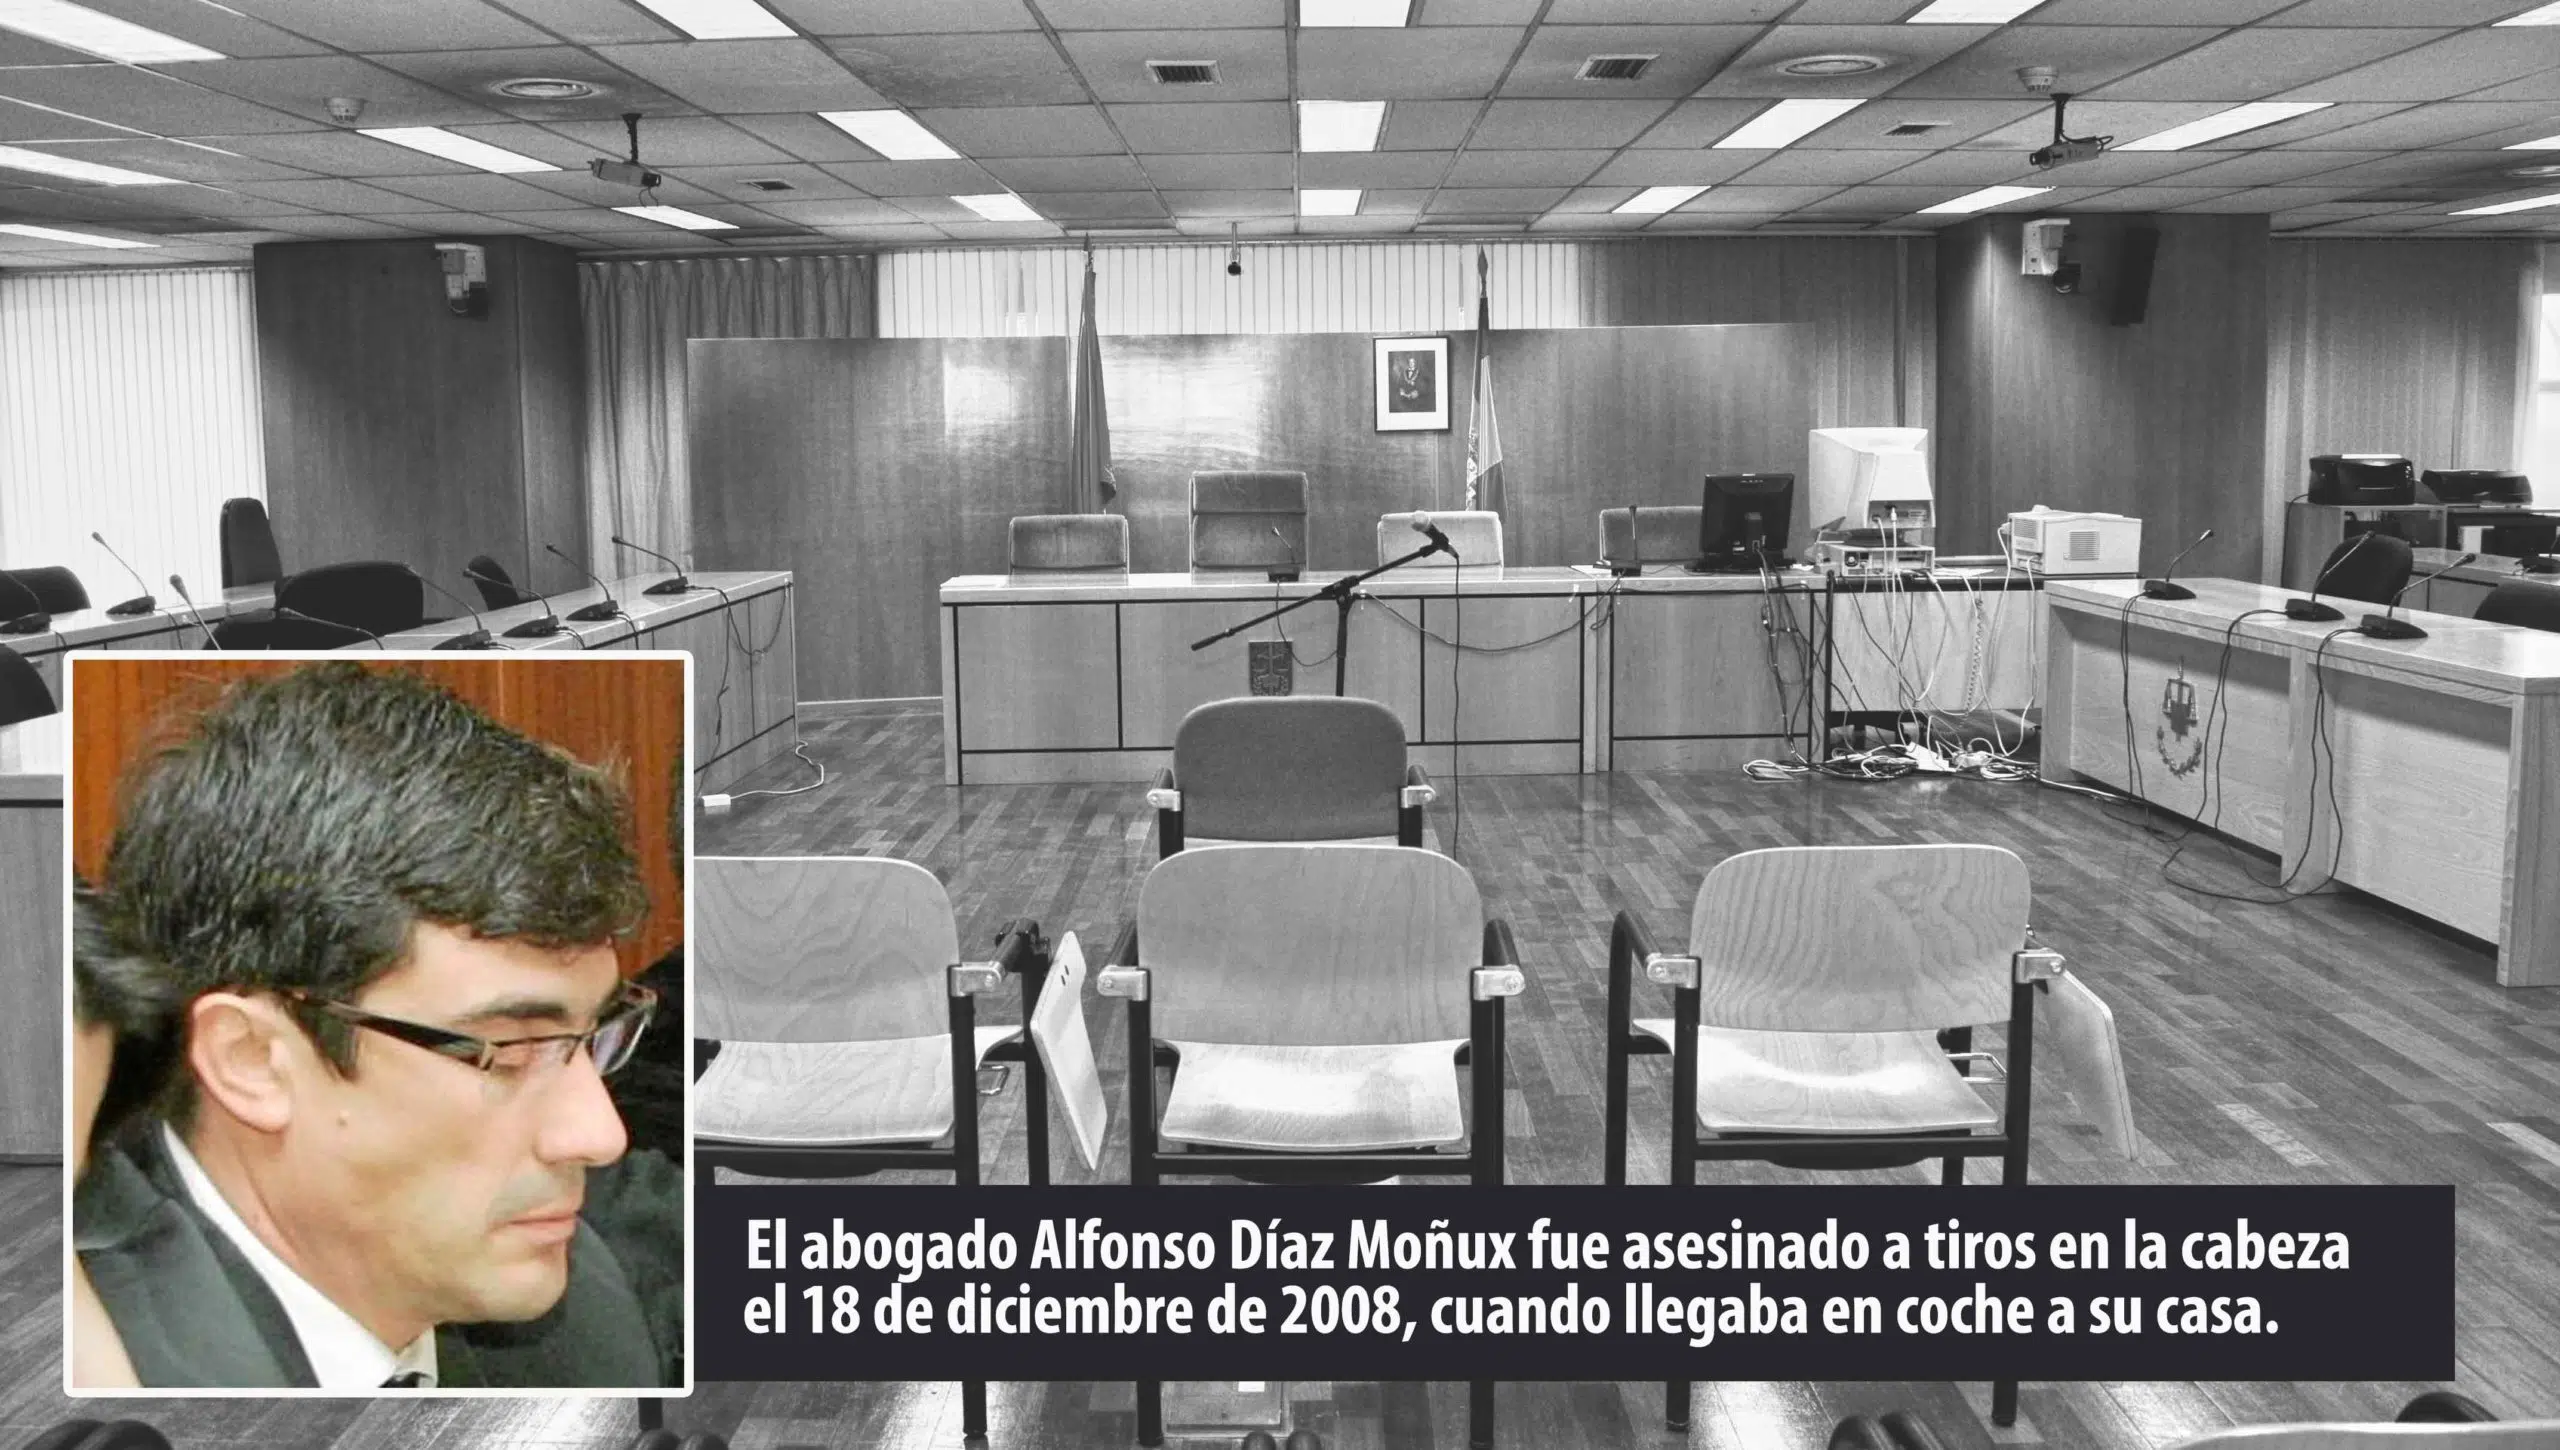 82 años de prisión a los autores, cómplices o conspiradores del asesinato del abogado Díaz Moñux